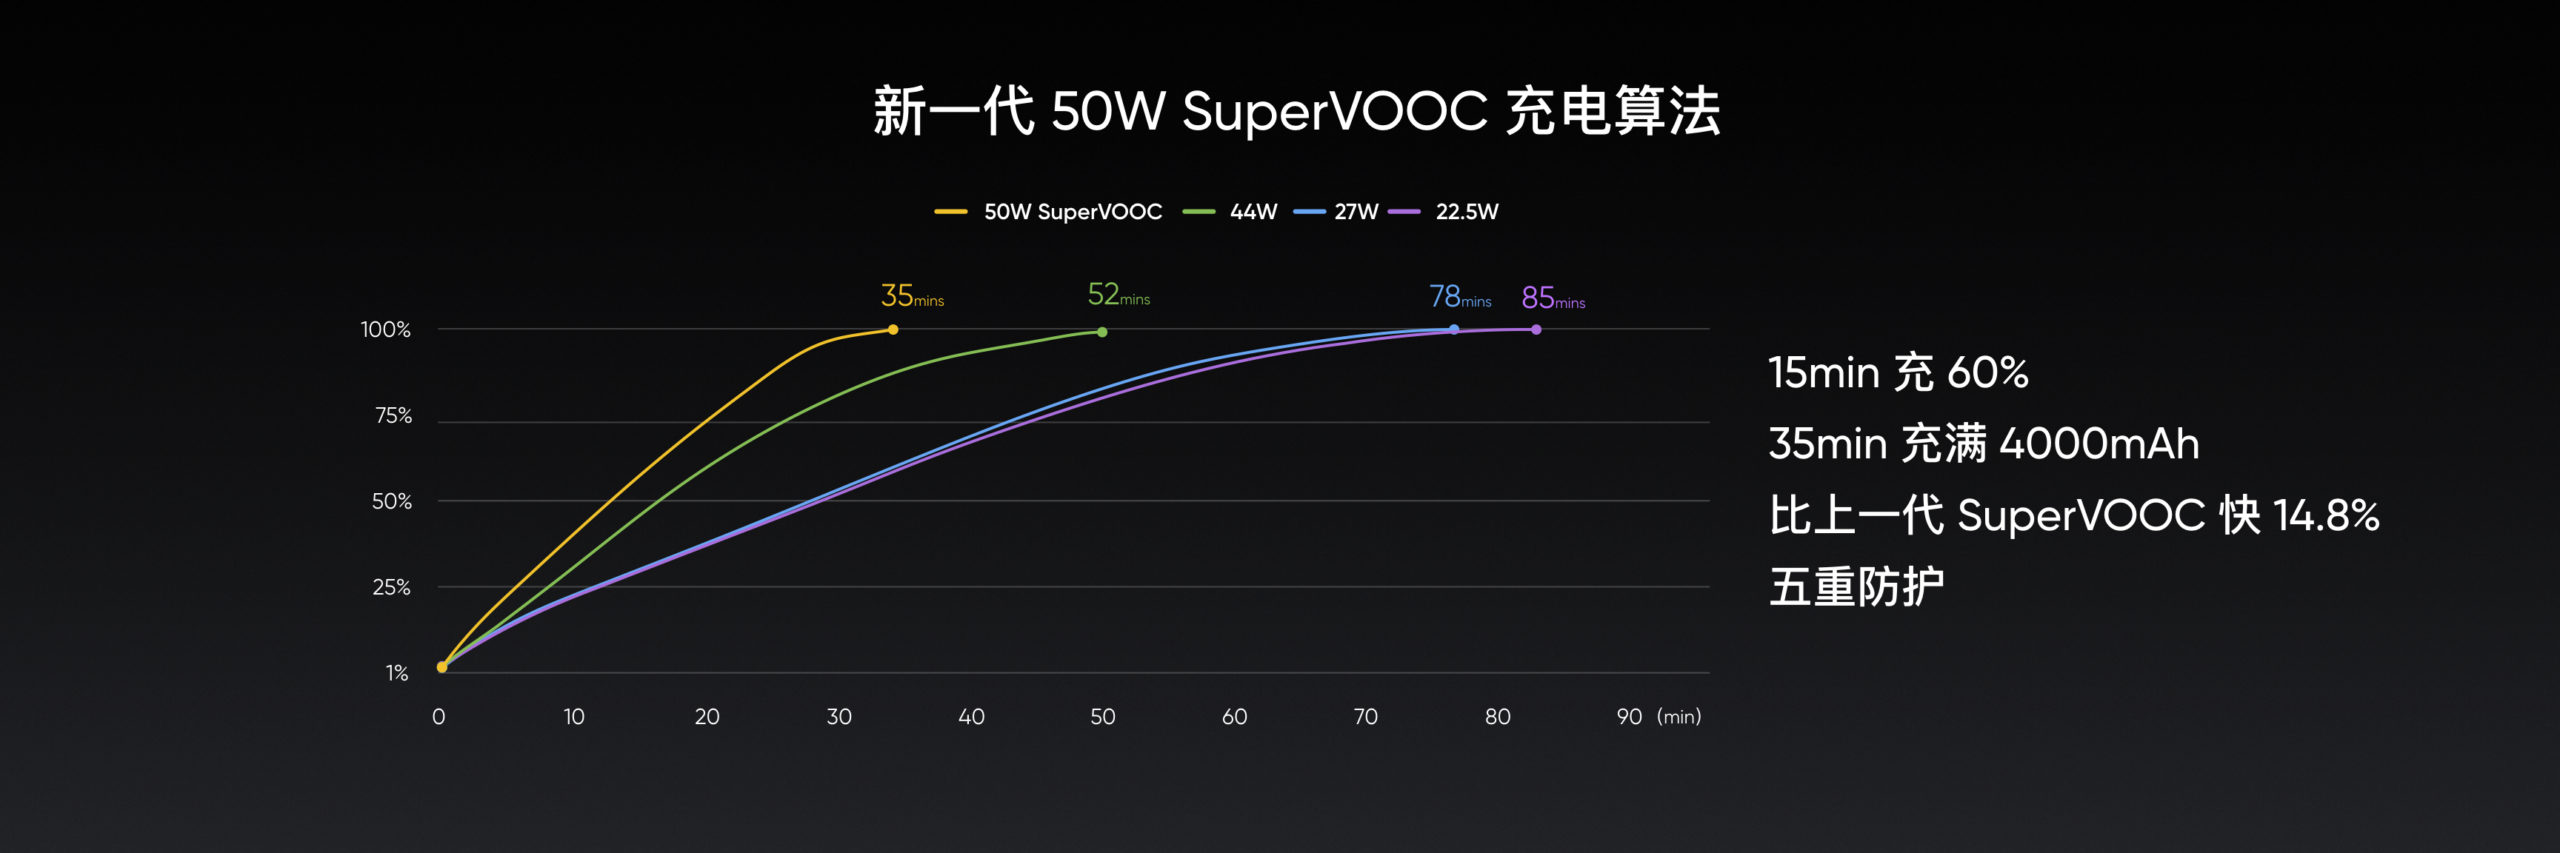 洗完澡，充滿電！超級旗艦 realme X2 Pro 內置 50W SuperVOOC 超級快充；充電從零到100%只需35分鐘！ 2